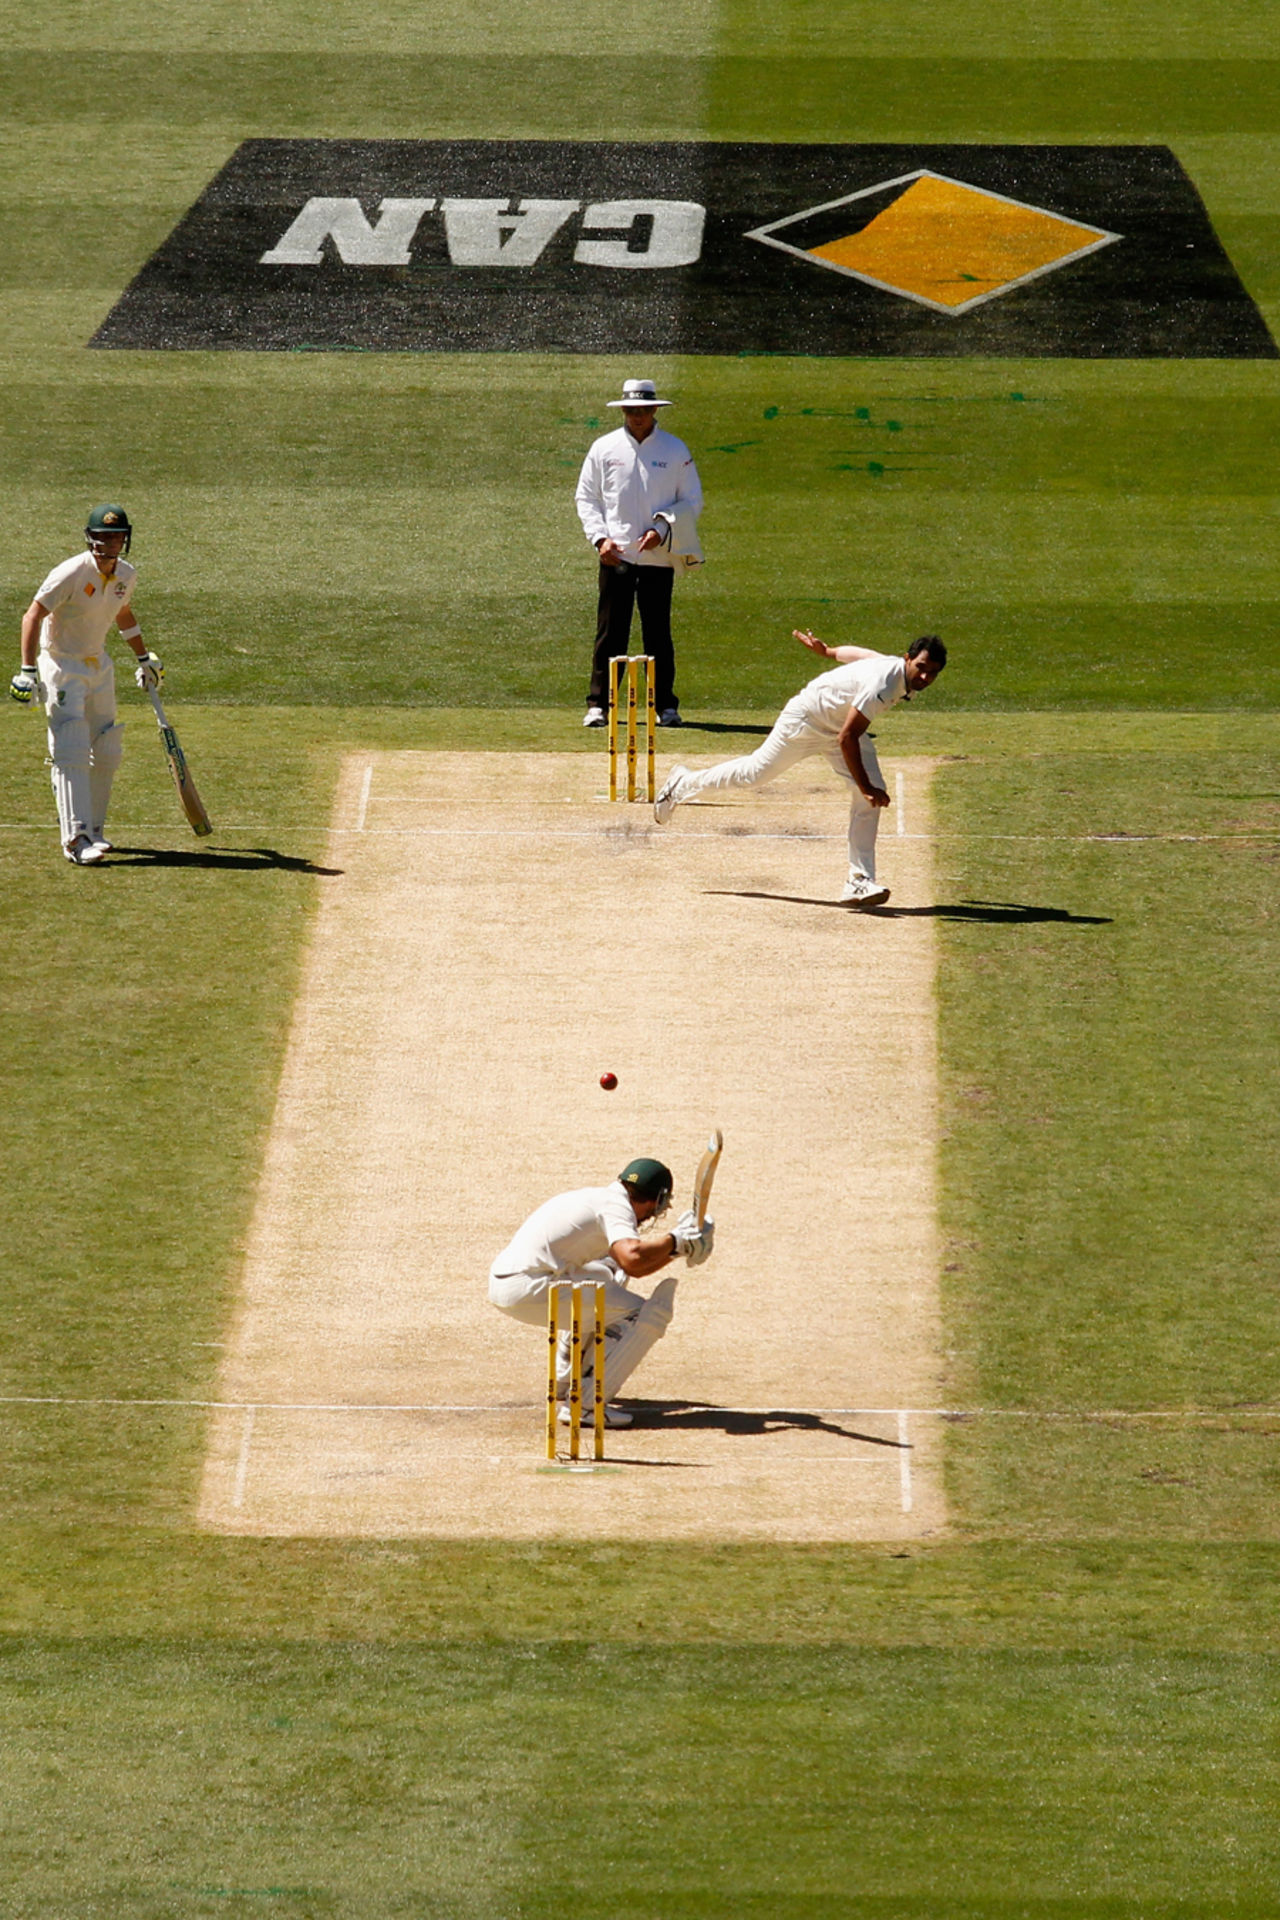 Brad Haddin ducks a Mohammed Shami bouncer, Australia v India, 3rd Test, Melbourne, 1st day, December 26, 2014